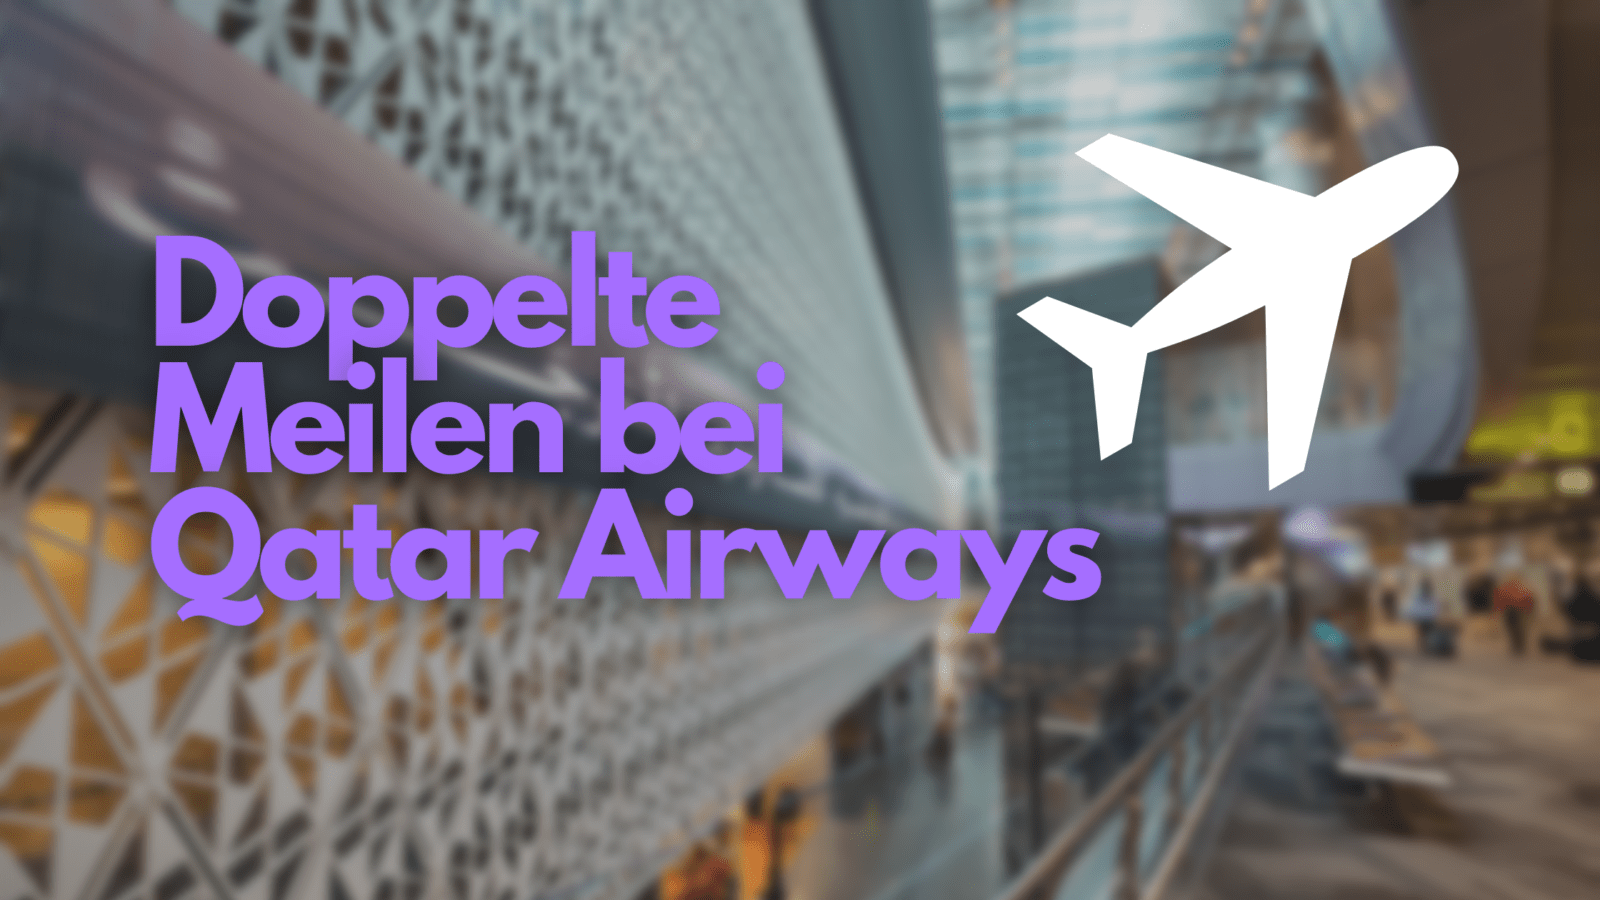 Doppelte Meilen bei Qatar Airways